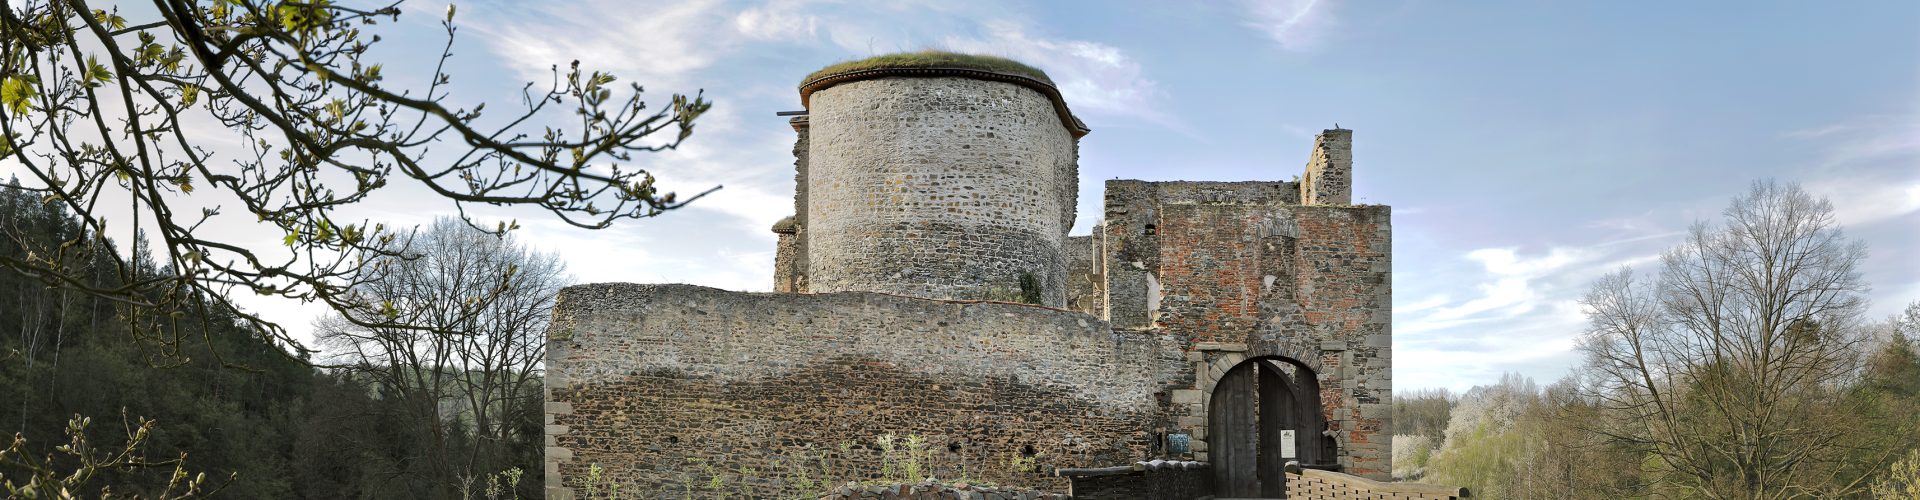 Krakovec Castle Ruins